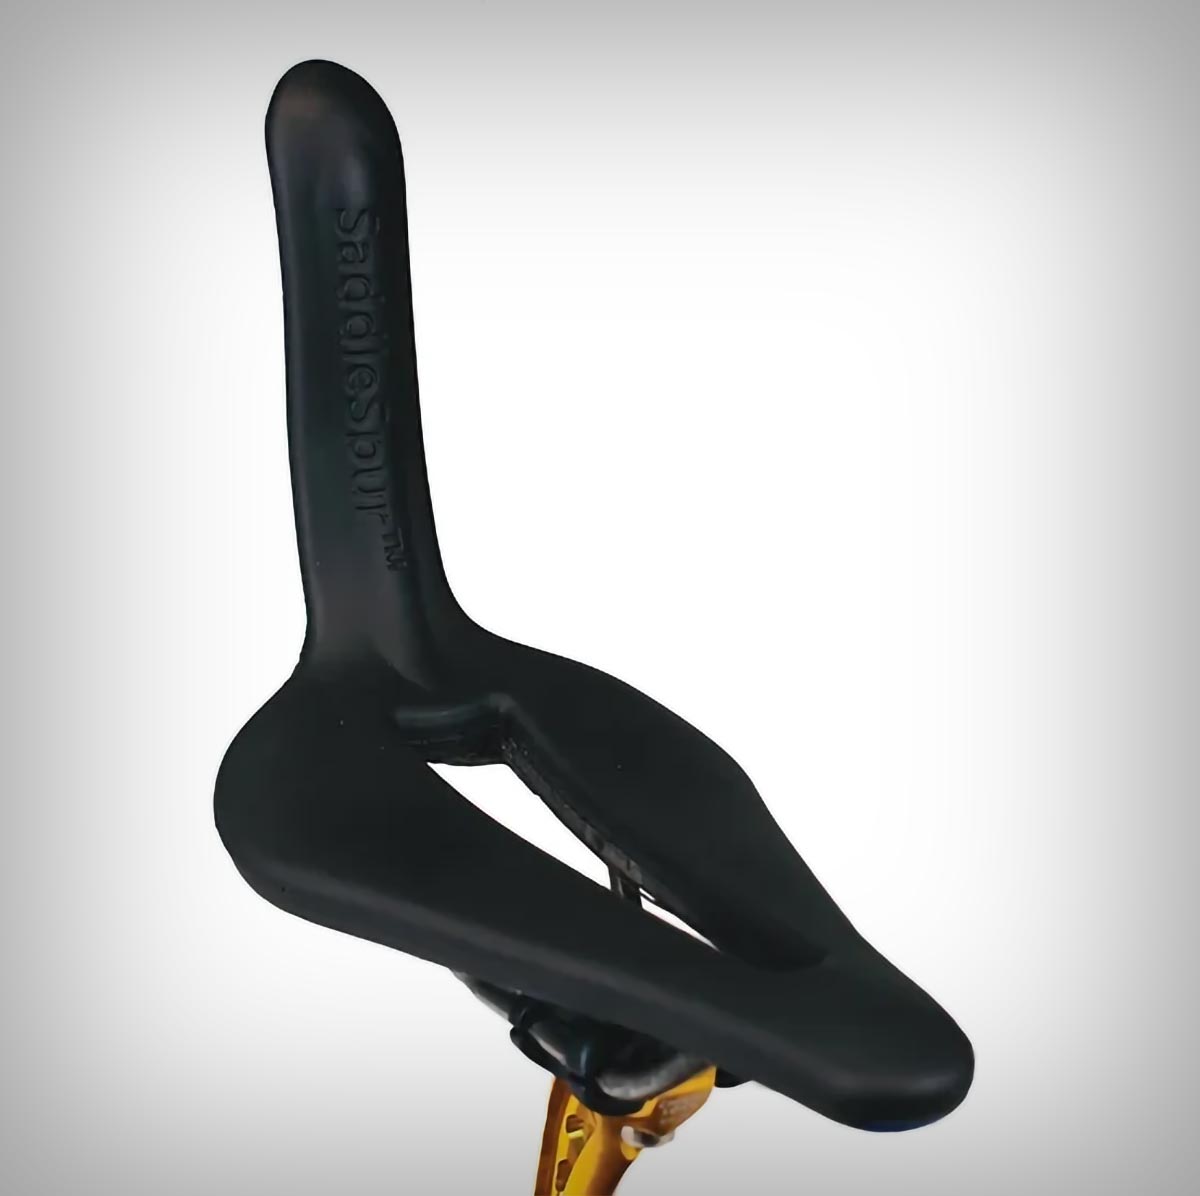 SaddleSpur, un sillín con respaldo de diseño 'muy sugerente' que promete más potencia y rendimiento con menos esfuerzo